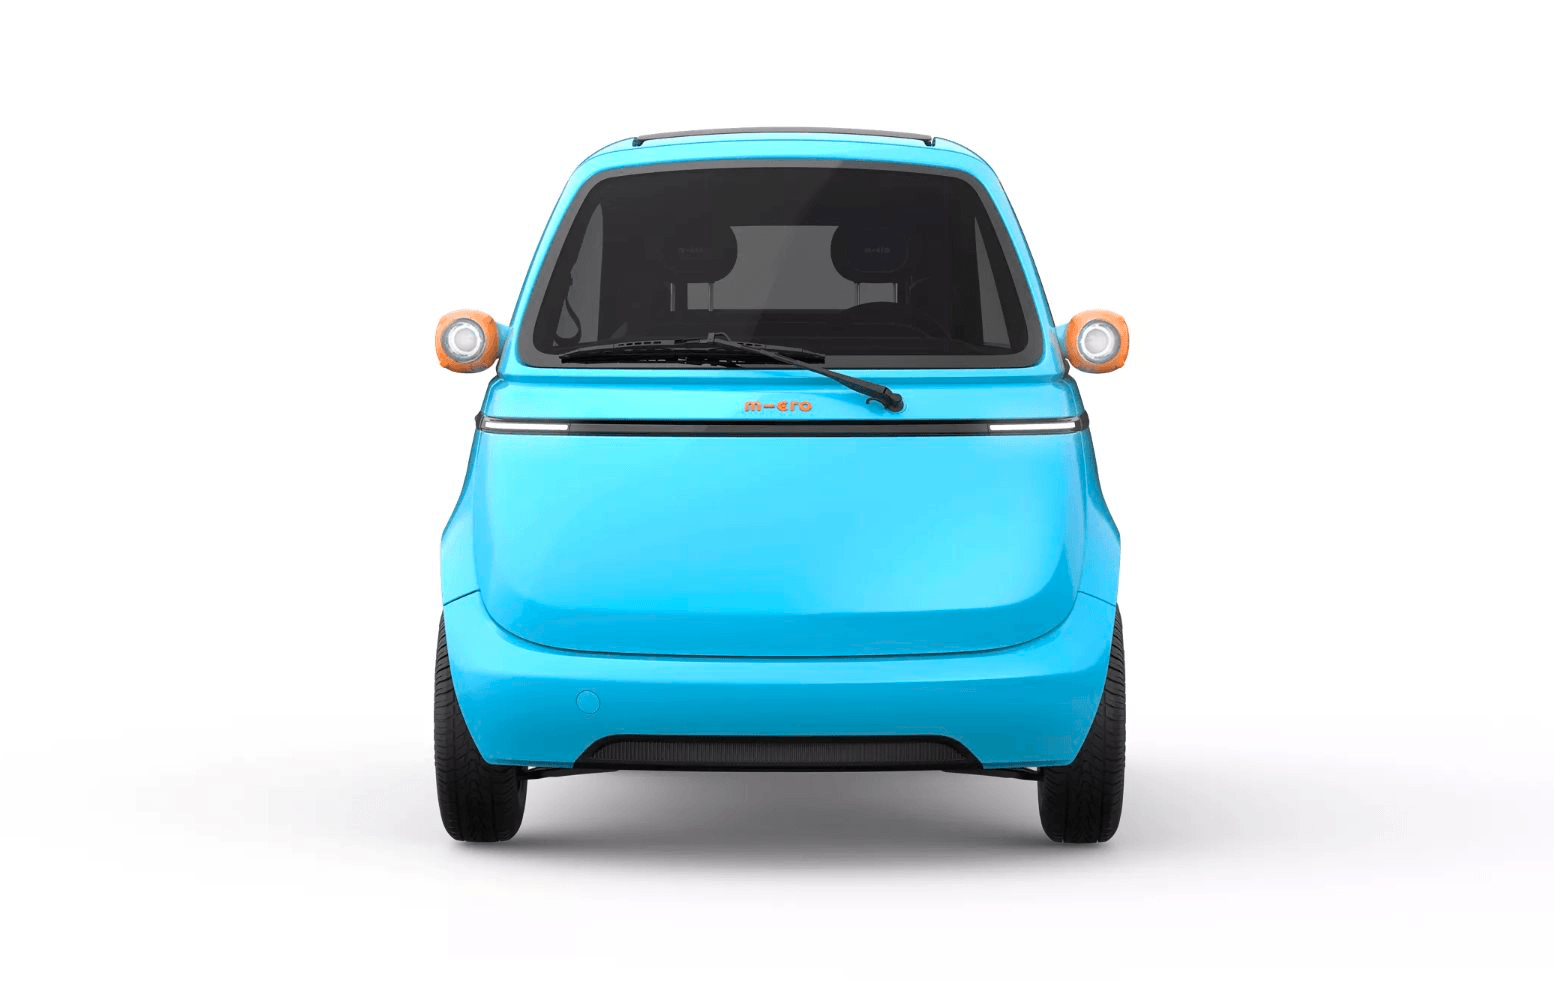 Đây xứng đáng là chiếc ô tô điện mini đáng yêu nhất quả đất: Tốc độ chỉ ngang xe đạp điện, không cần bằng cũng nhảy lên lái vô tư- Ảnh 3.